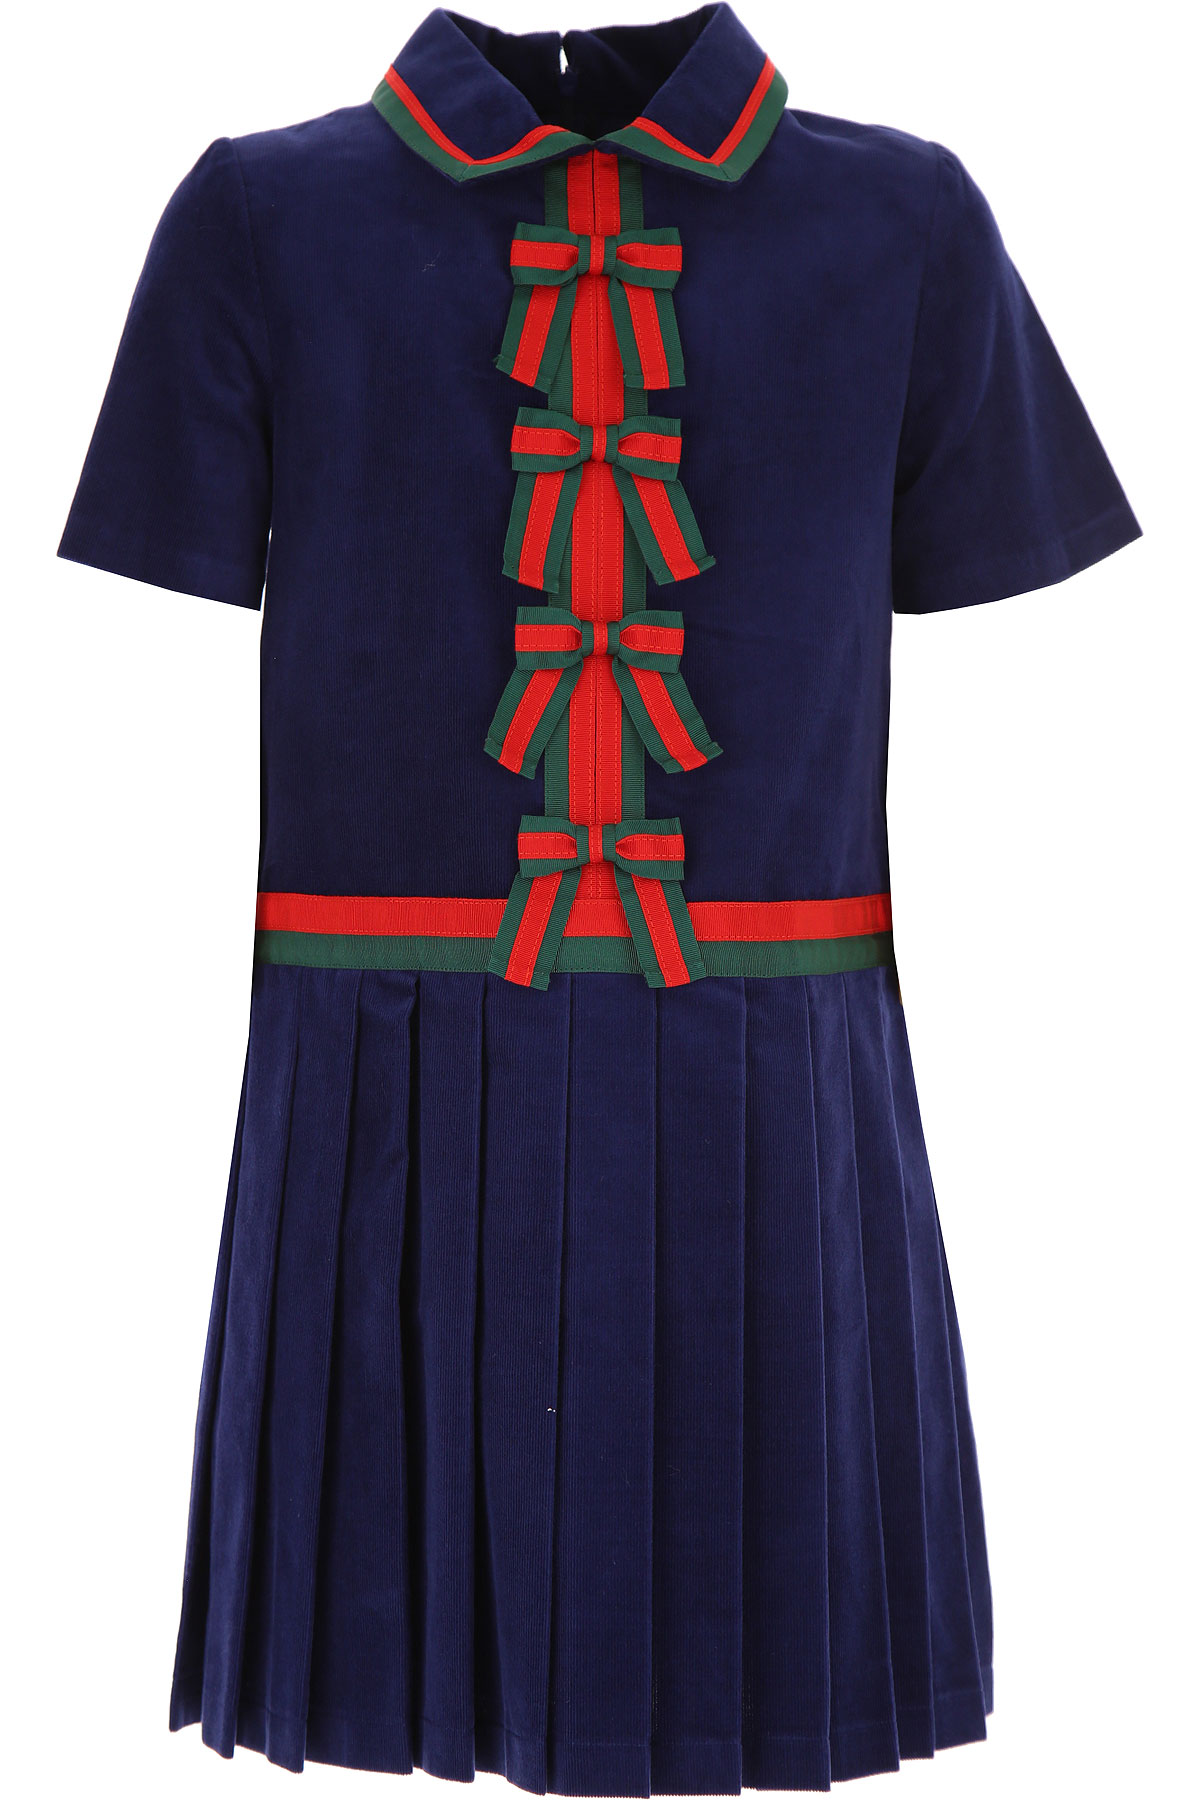 Gucci Kleid für Mädchen Günstig im Sale, Blau, Baumwolle, 2017, 4Y 6Y 8Y